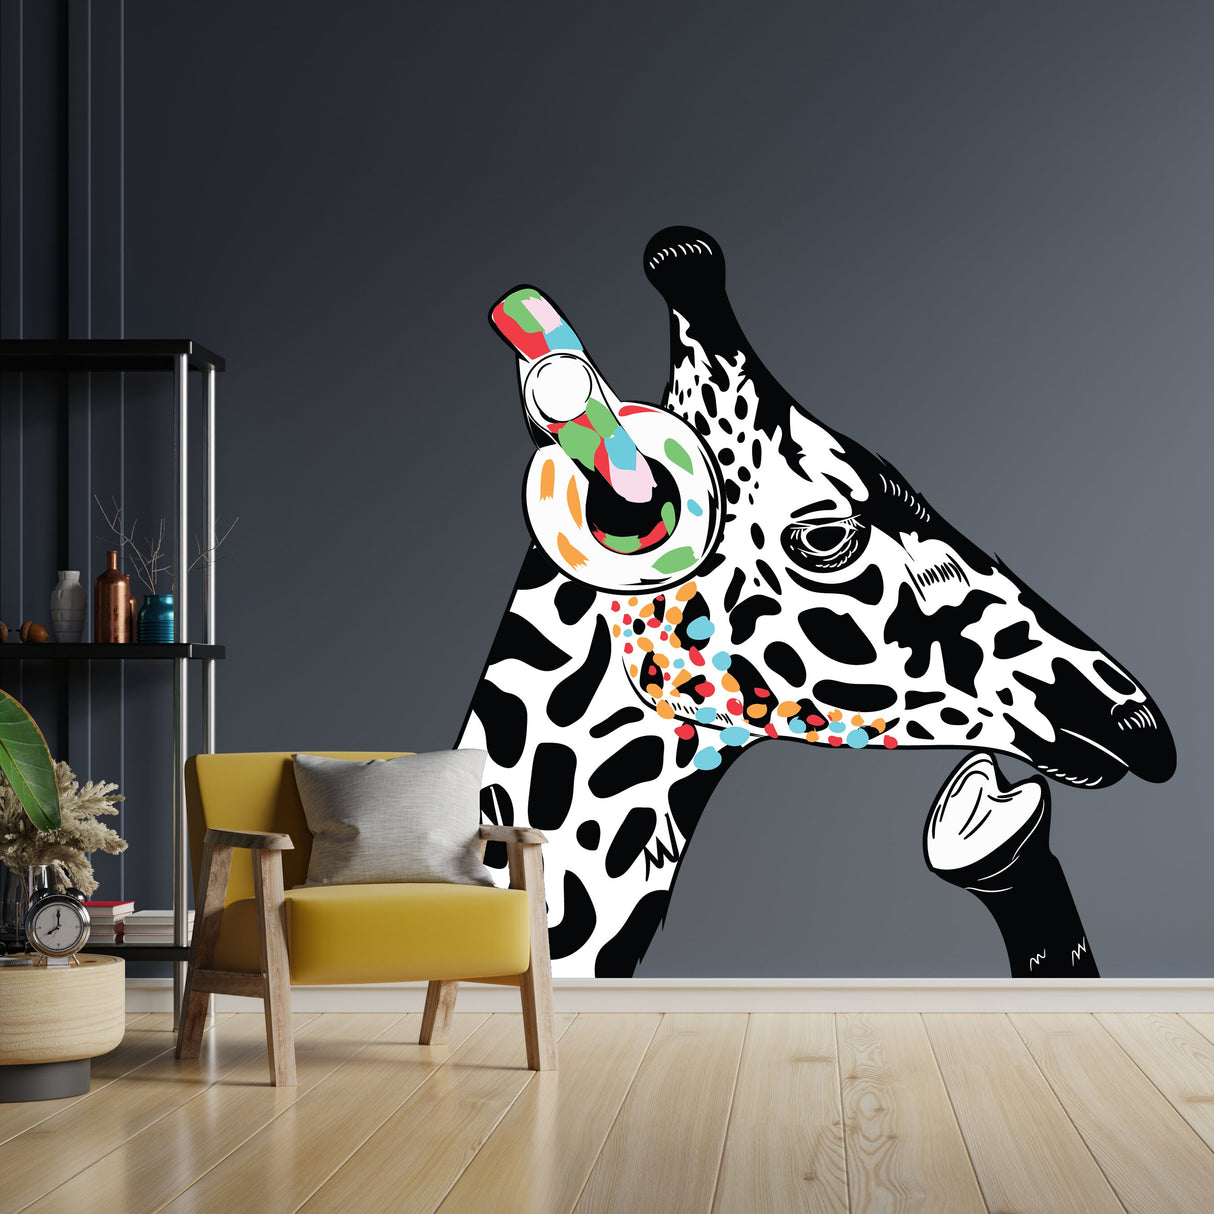 Thinking Giraffe Sticker - Inspired by Banksy Art Vinyl Dj Baksy Wall Decal